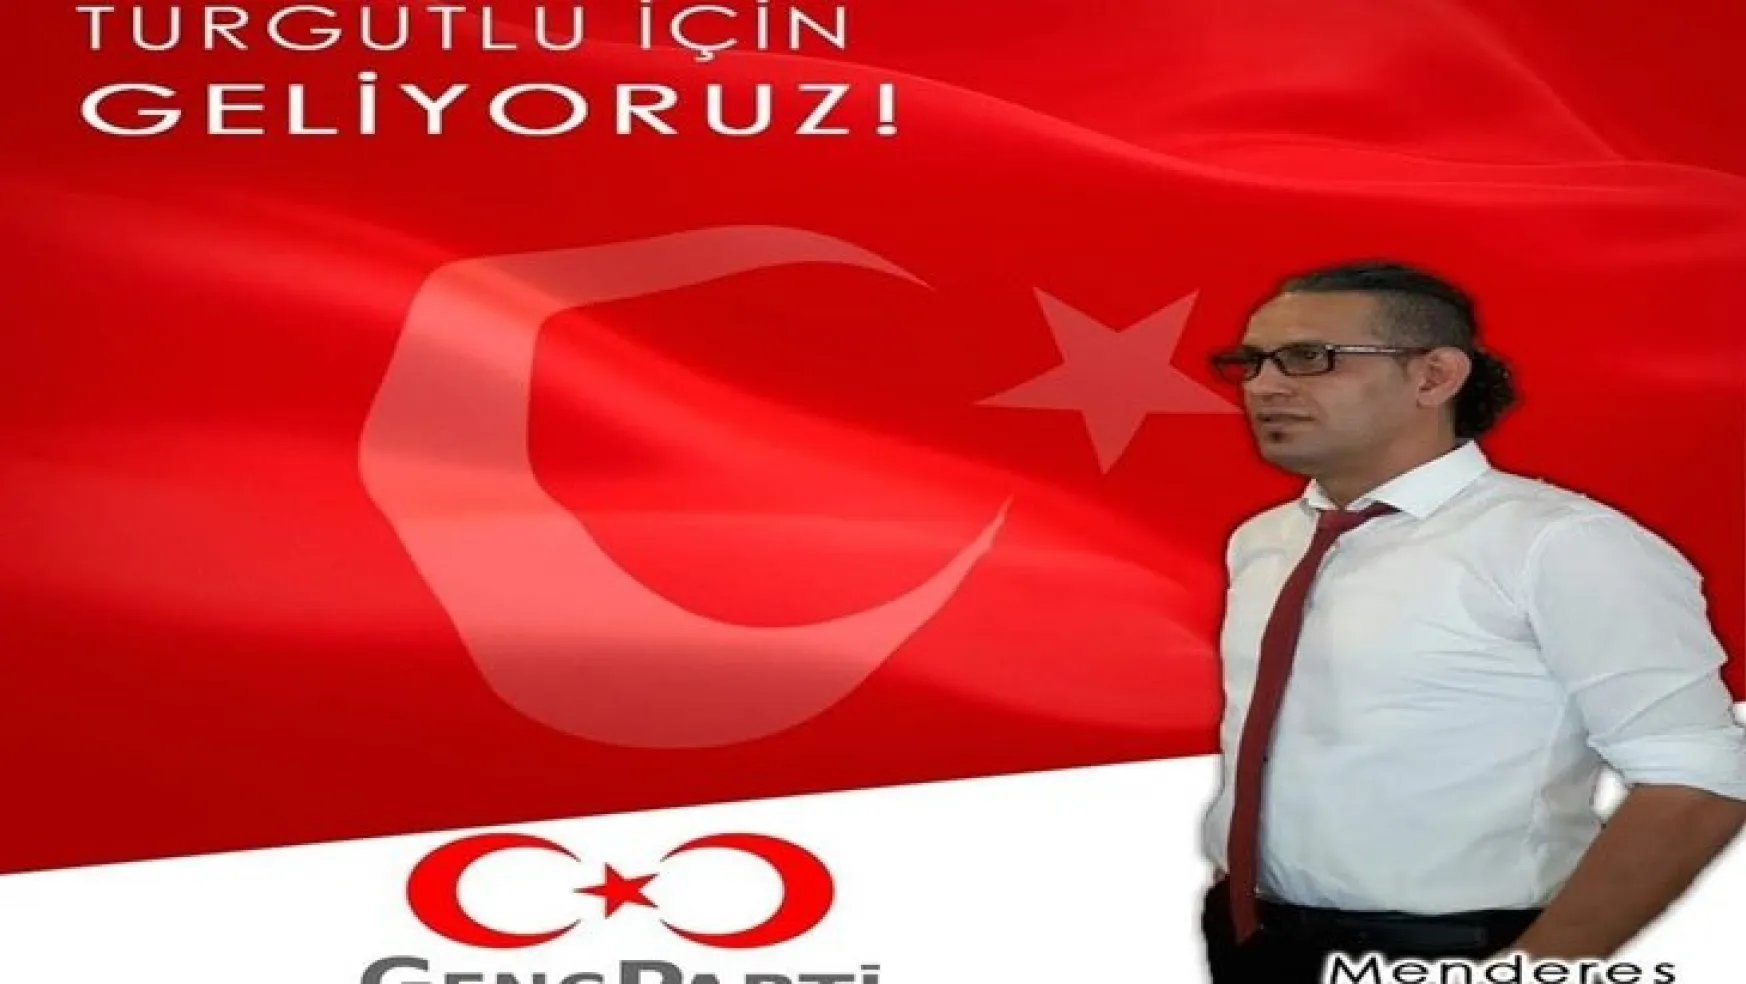 Genç Parti Turgtulu İlçe Başkanı Menderes Teymur'dan dikkat çeken açıklama!